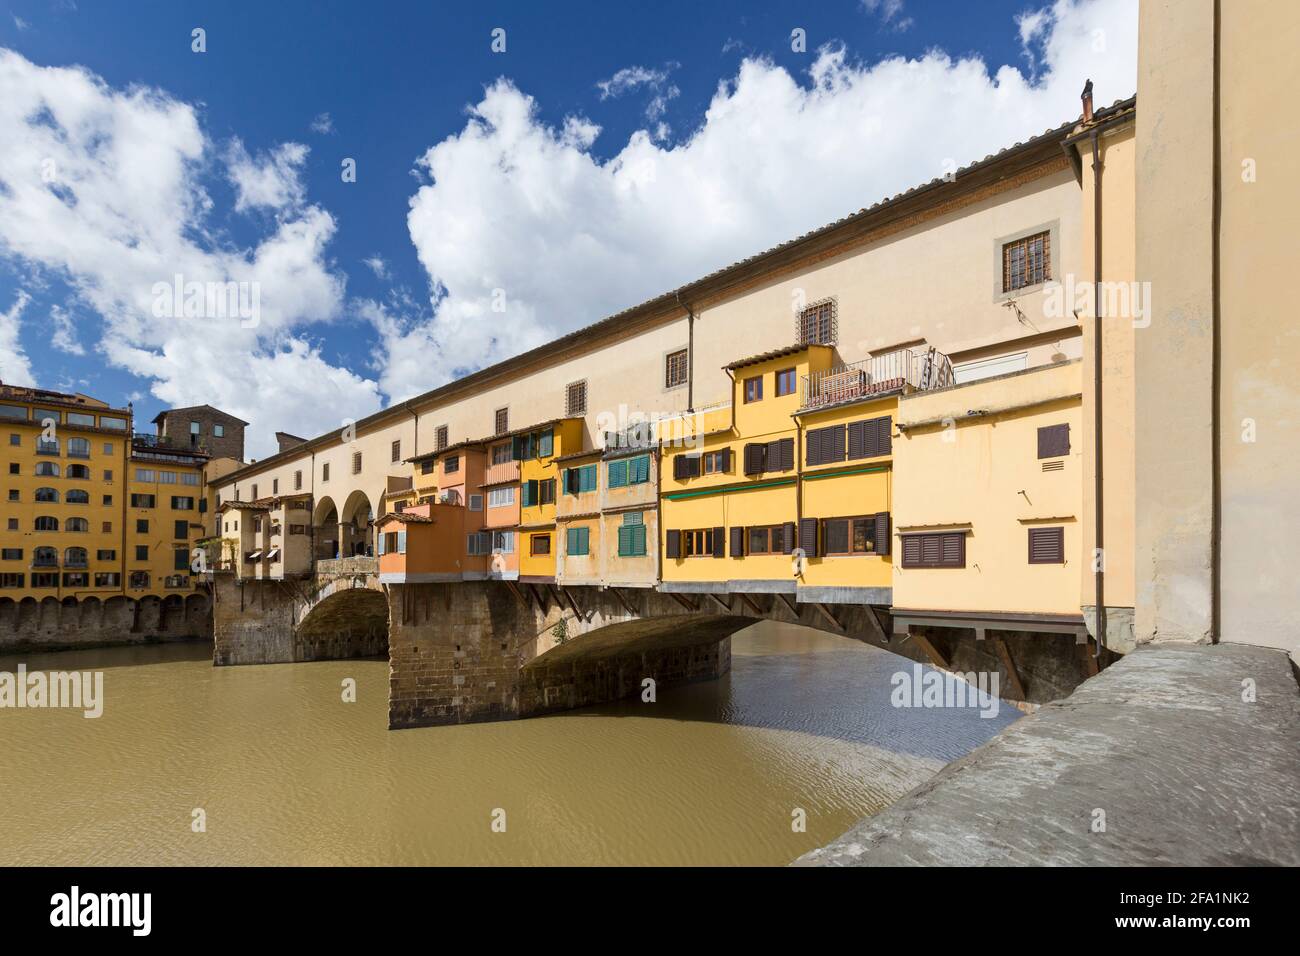 Ponte vecchio, Florence, Italy Stock Photo